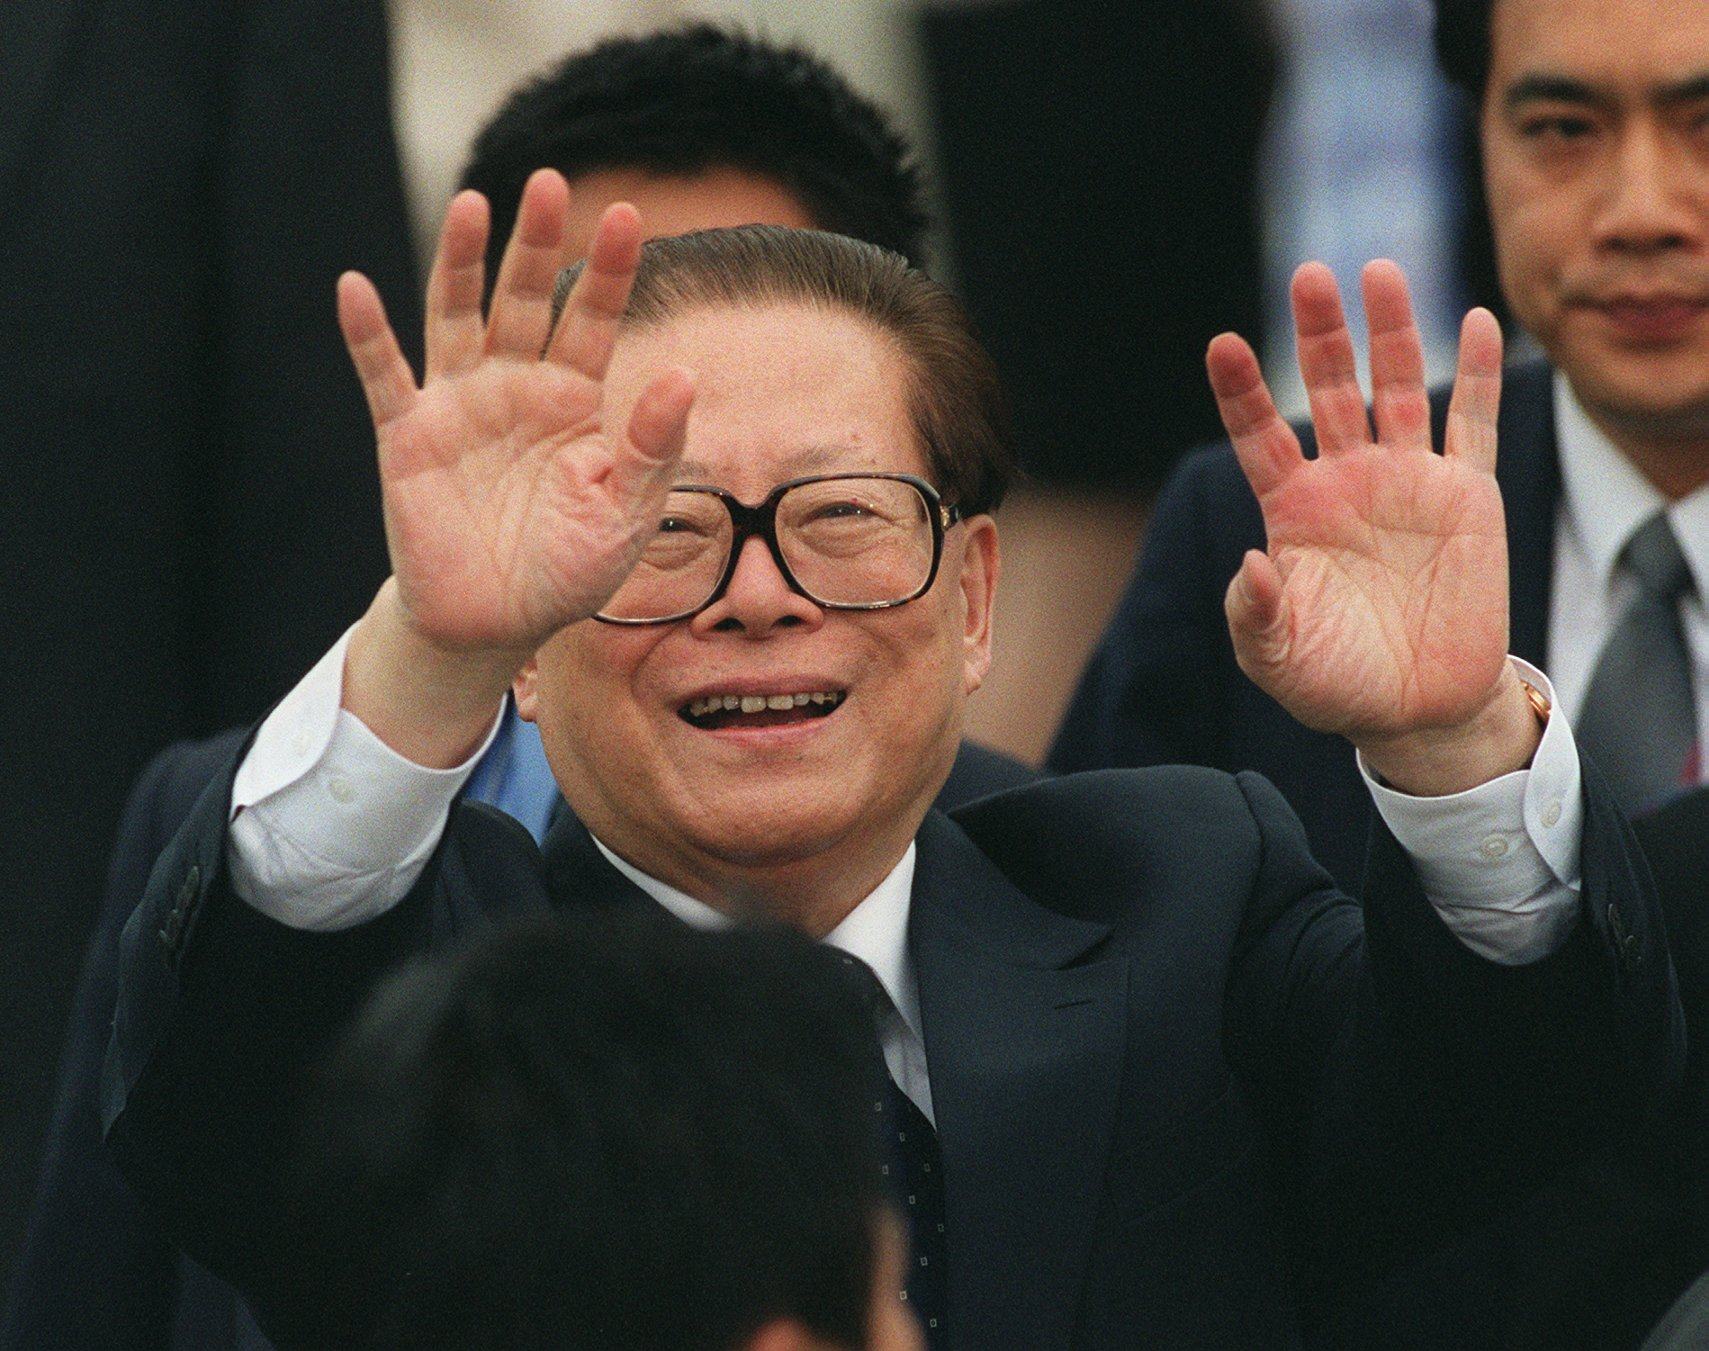 Jiang Zemin, then president of China, waves goodbye to the press at Hong Kong International Airport in May 2001. Photo: Dustin Shum